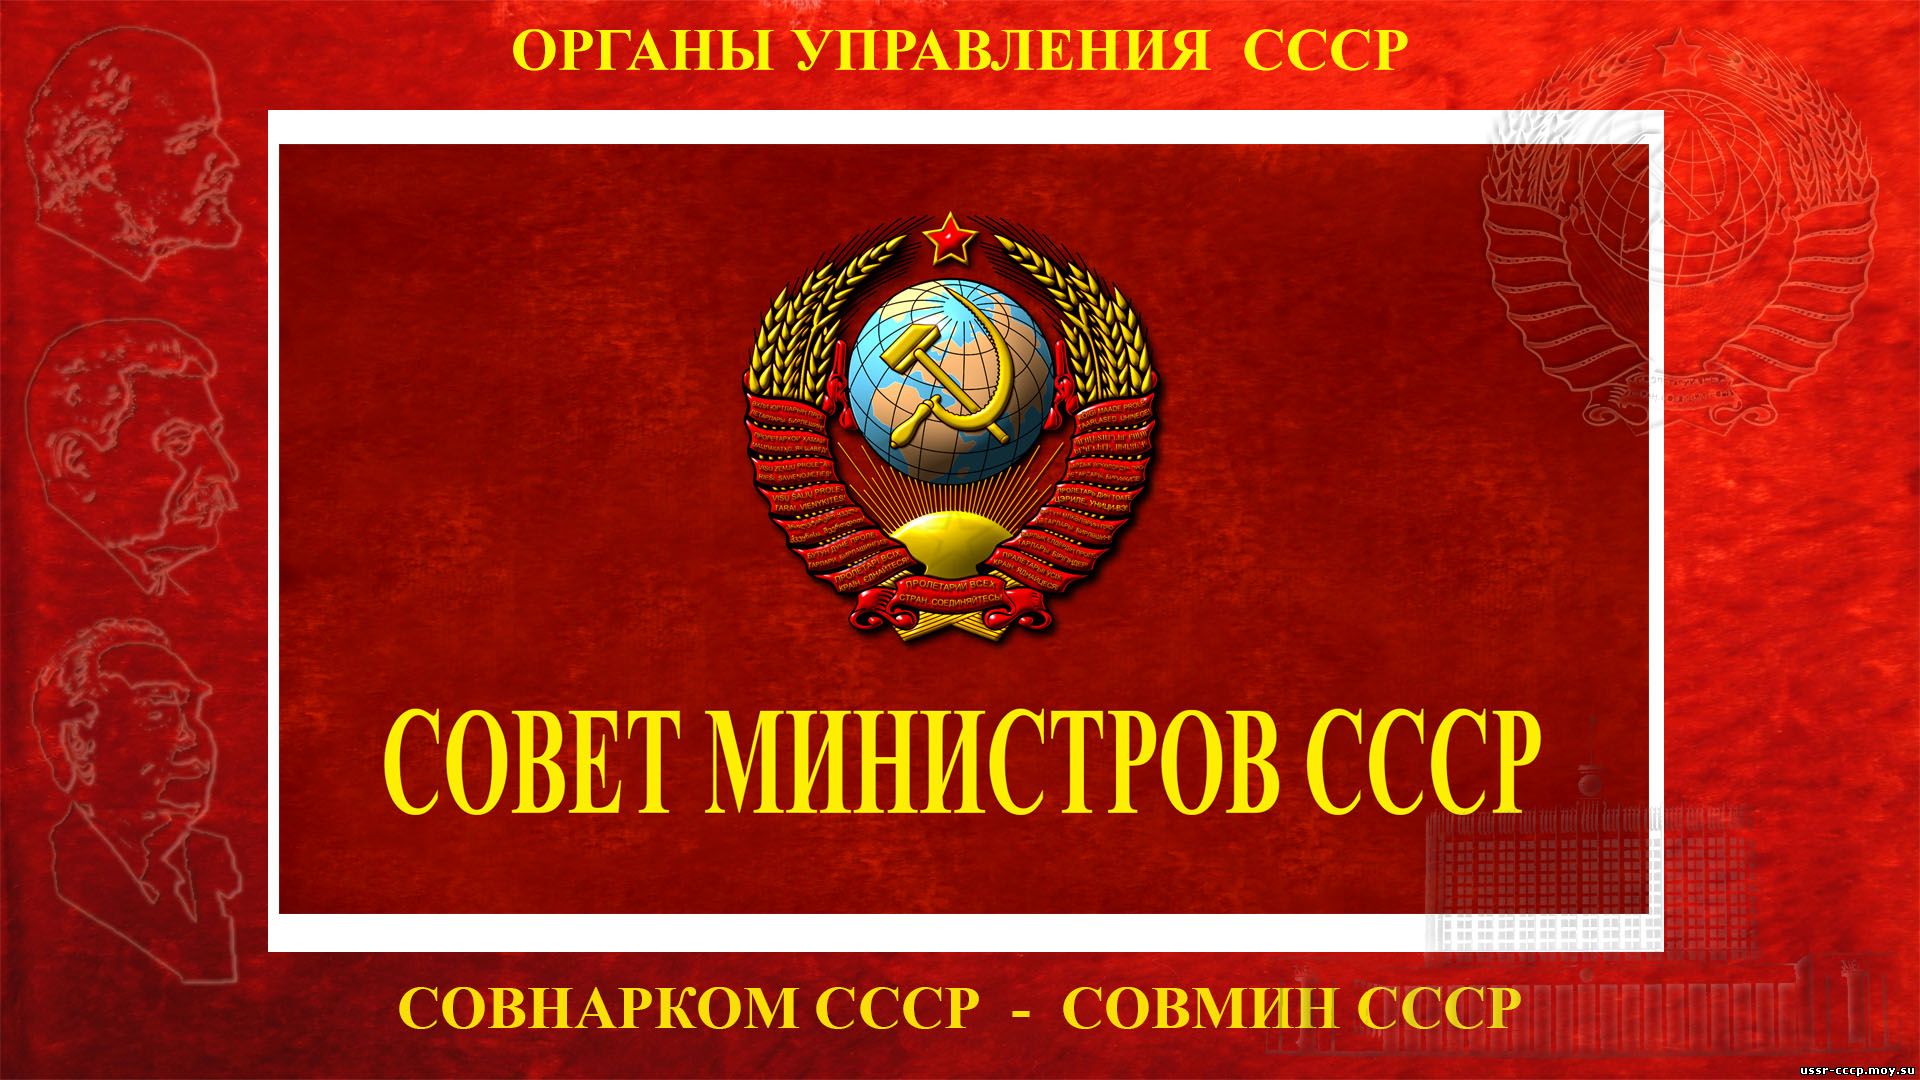 Совет министров СССР — (Совмин СССР) — Высший орган государственной власти Союза ССР (1946—1991) (Полное повествование)